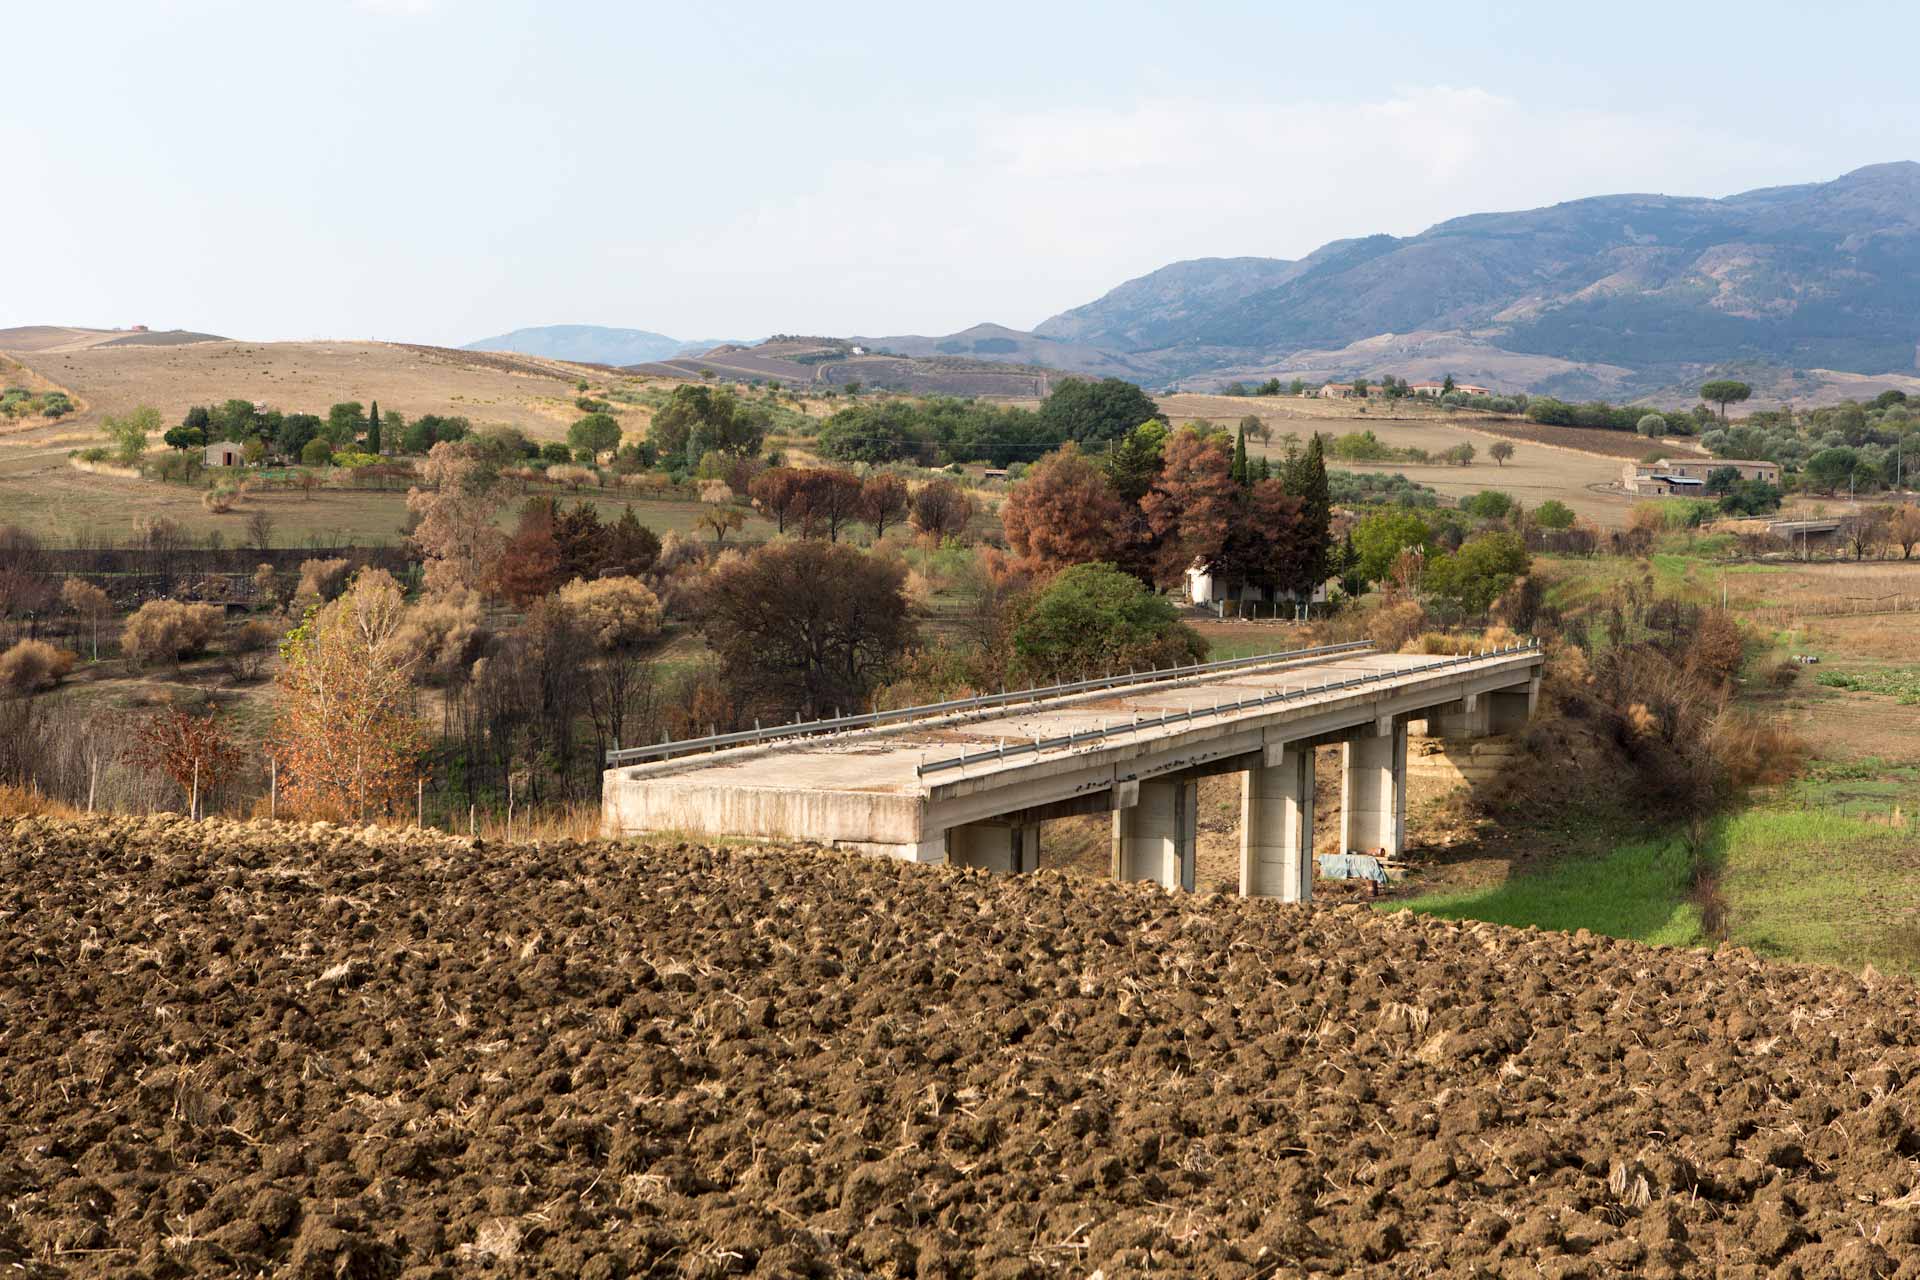 Eine funktionslose Straßenbrücke mitten in der Landschaft, Relikte der dubiosen Machenschaften der sizilianischen Unterwelt.